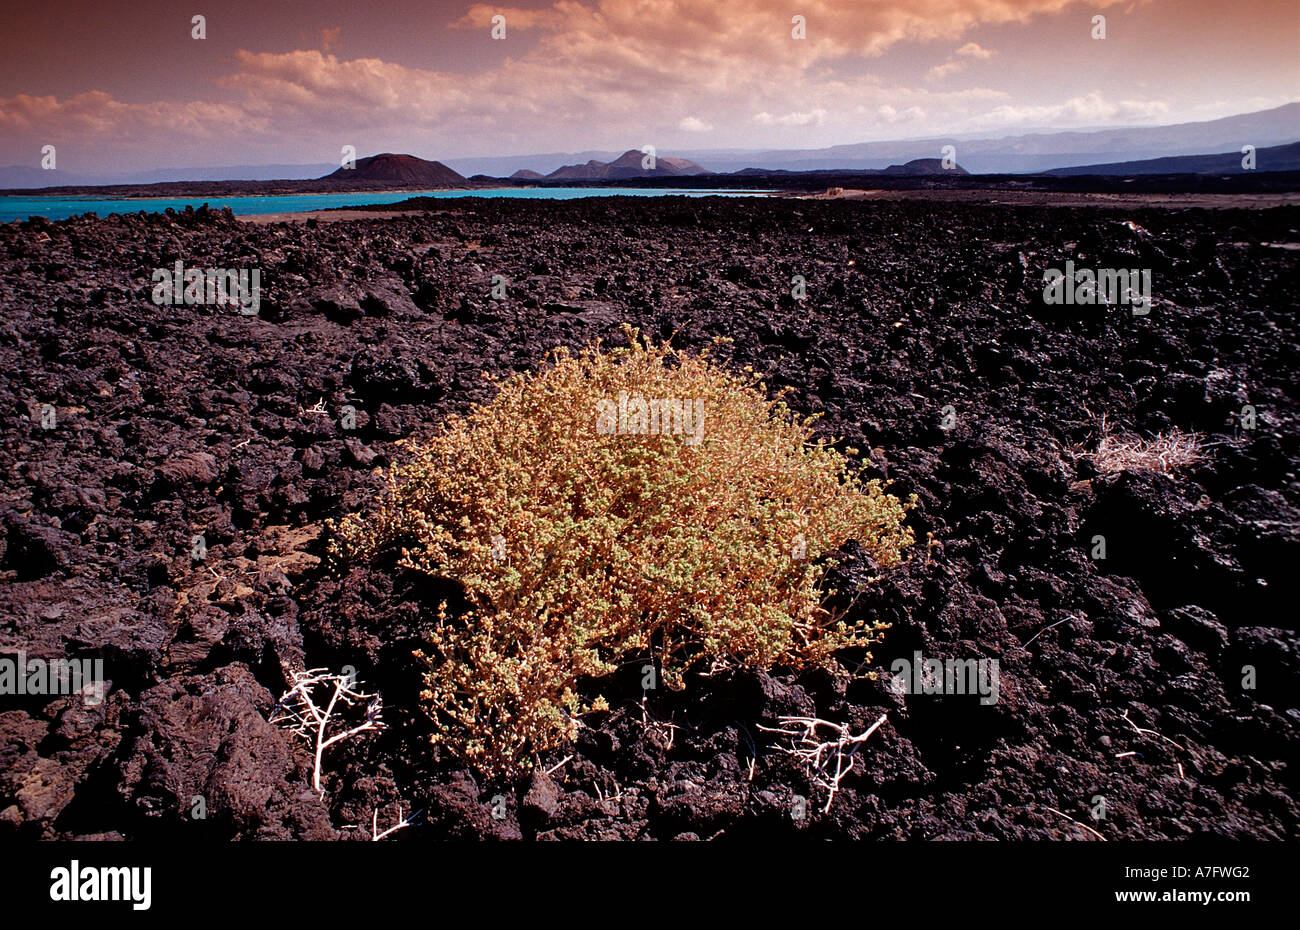 Les plantes dans le désert de l'Afrique Djibouti Djibouti Triangle Afar Banque D'Images